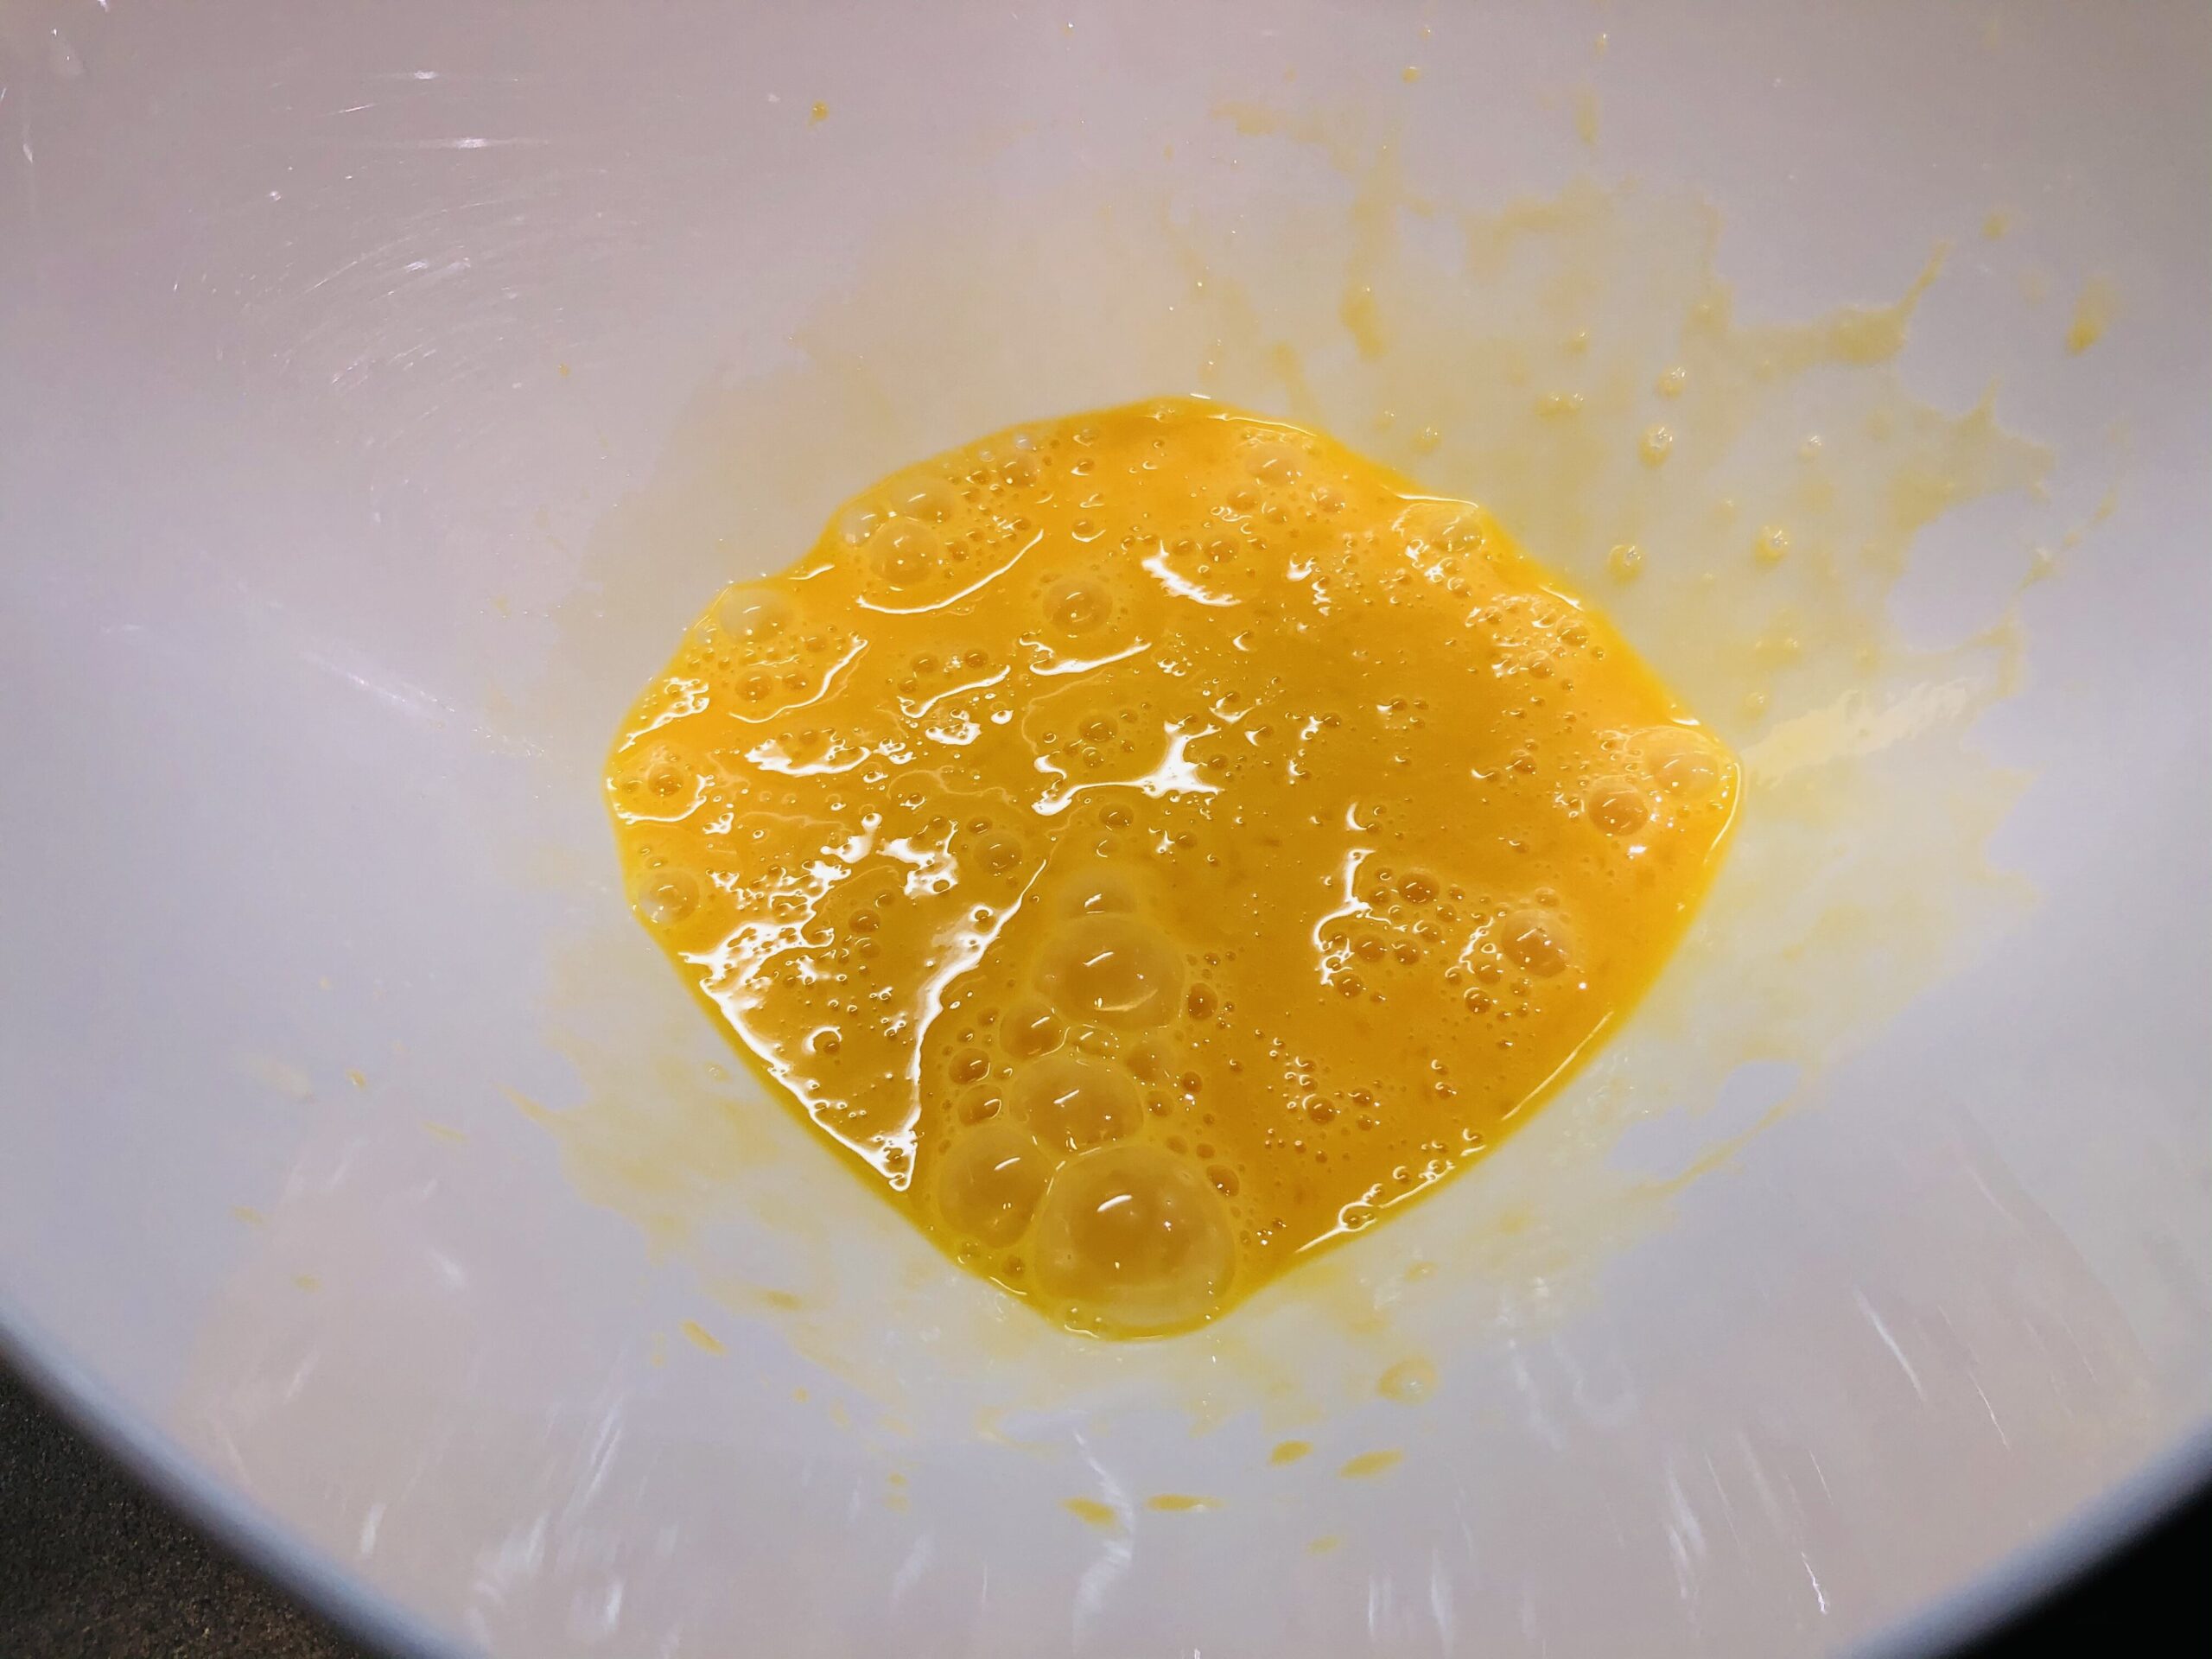 ハンバーグのタネを作るときの最初に卵をしっかり溶き交ぜた画像です。